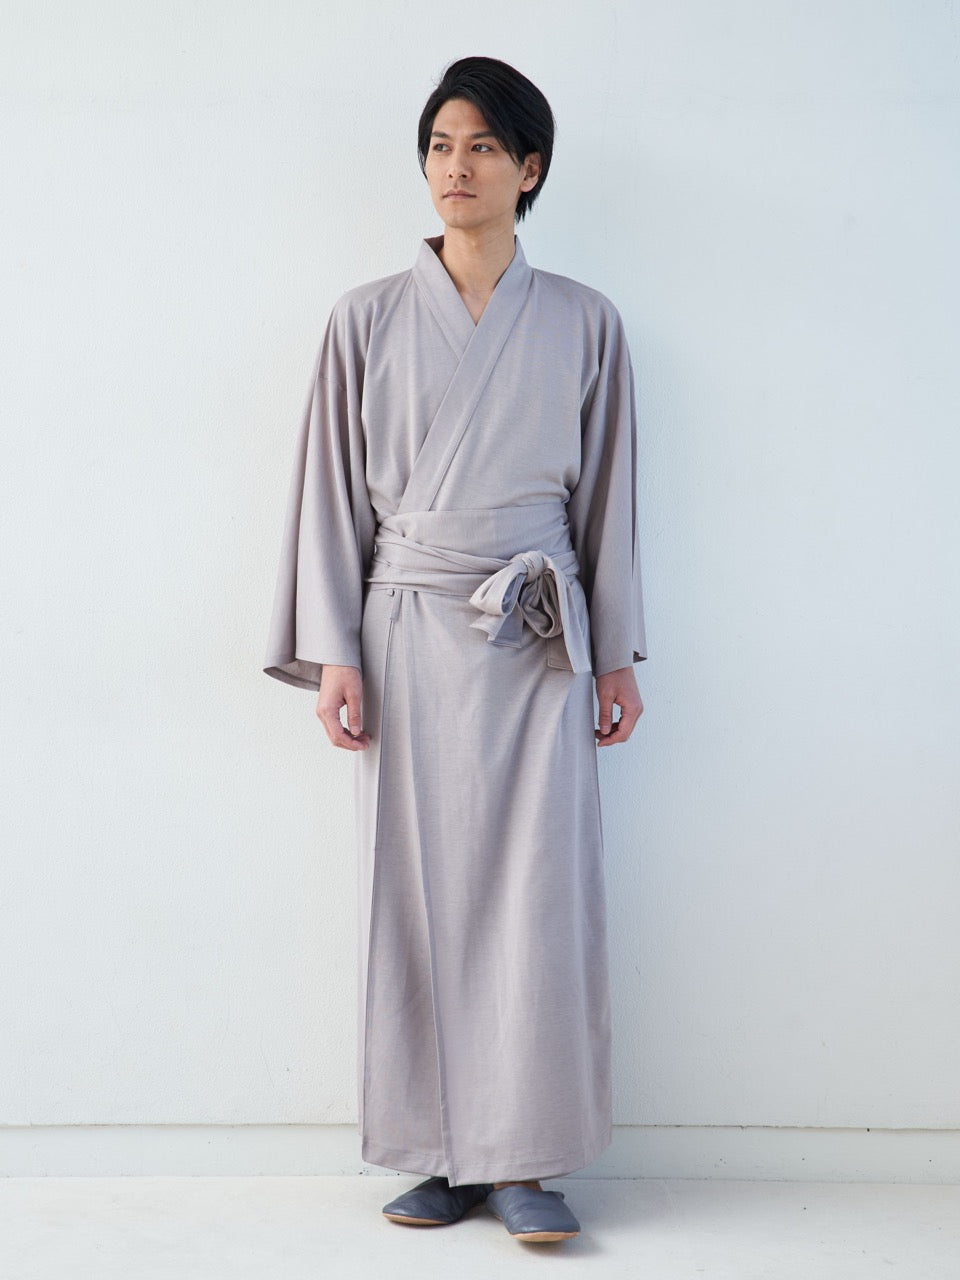 
                  
                    浴衣ルームウェア・プレミアム-グレー- Yukata Roomwear Premium-Grey-
                  
                